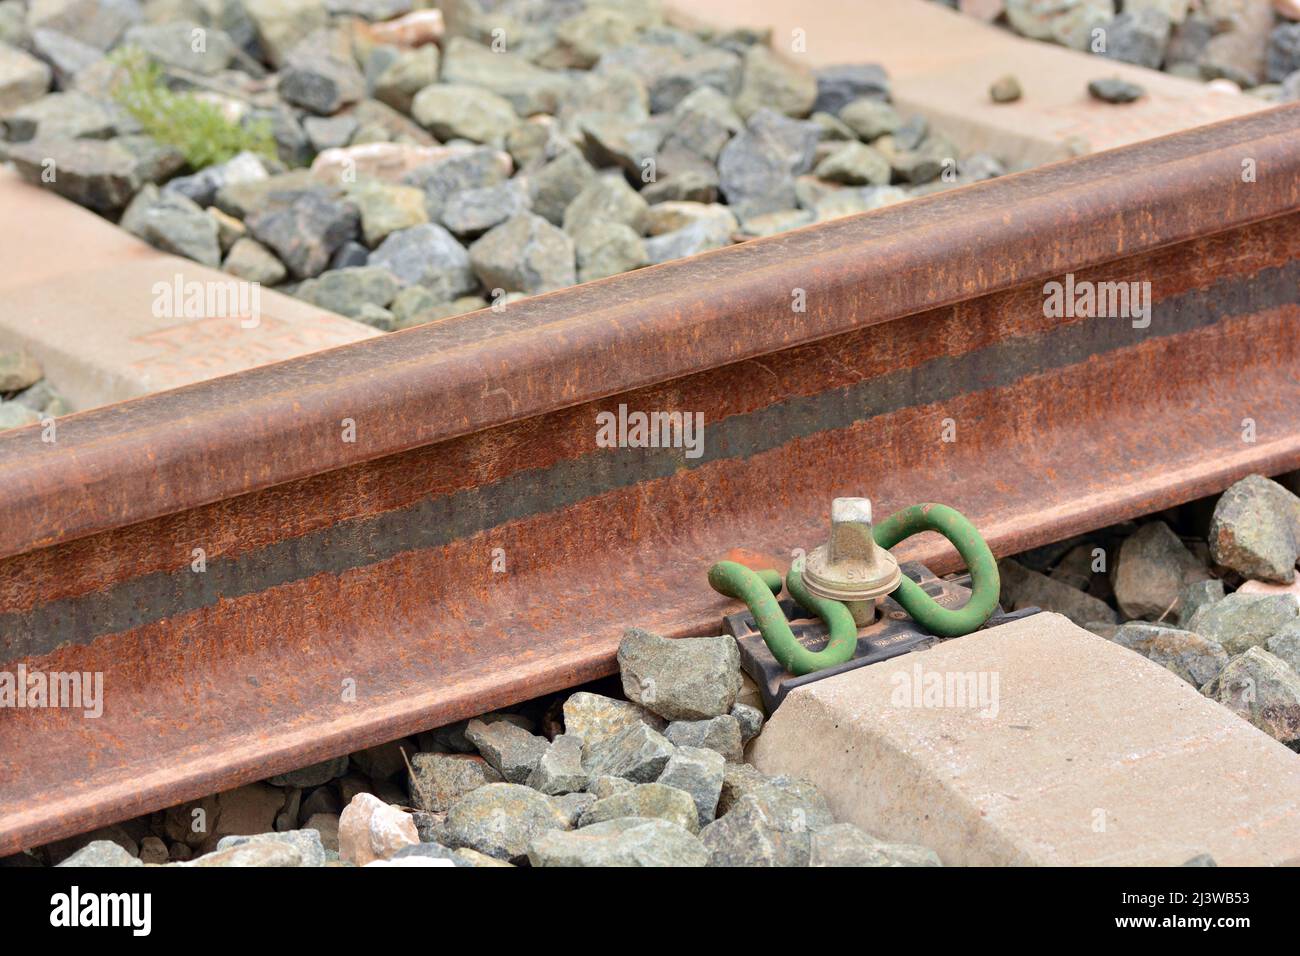 Detalle de los anclajes de la vía del tren Stock Photo